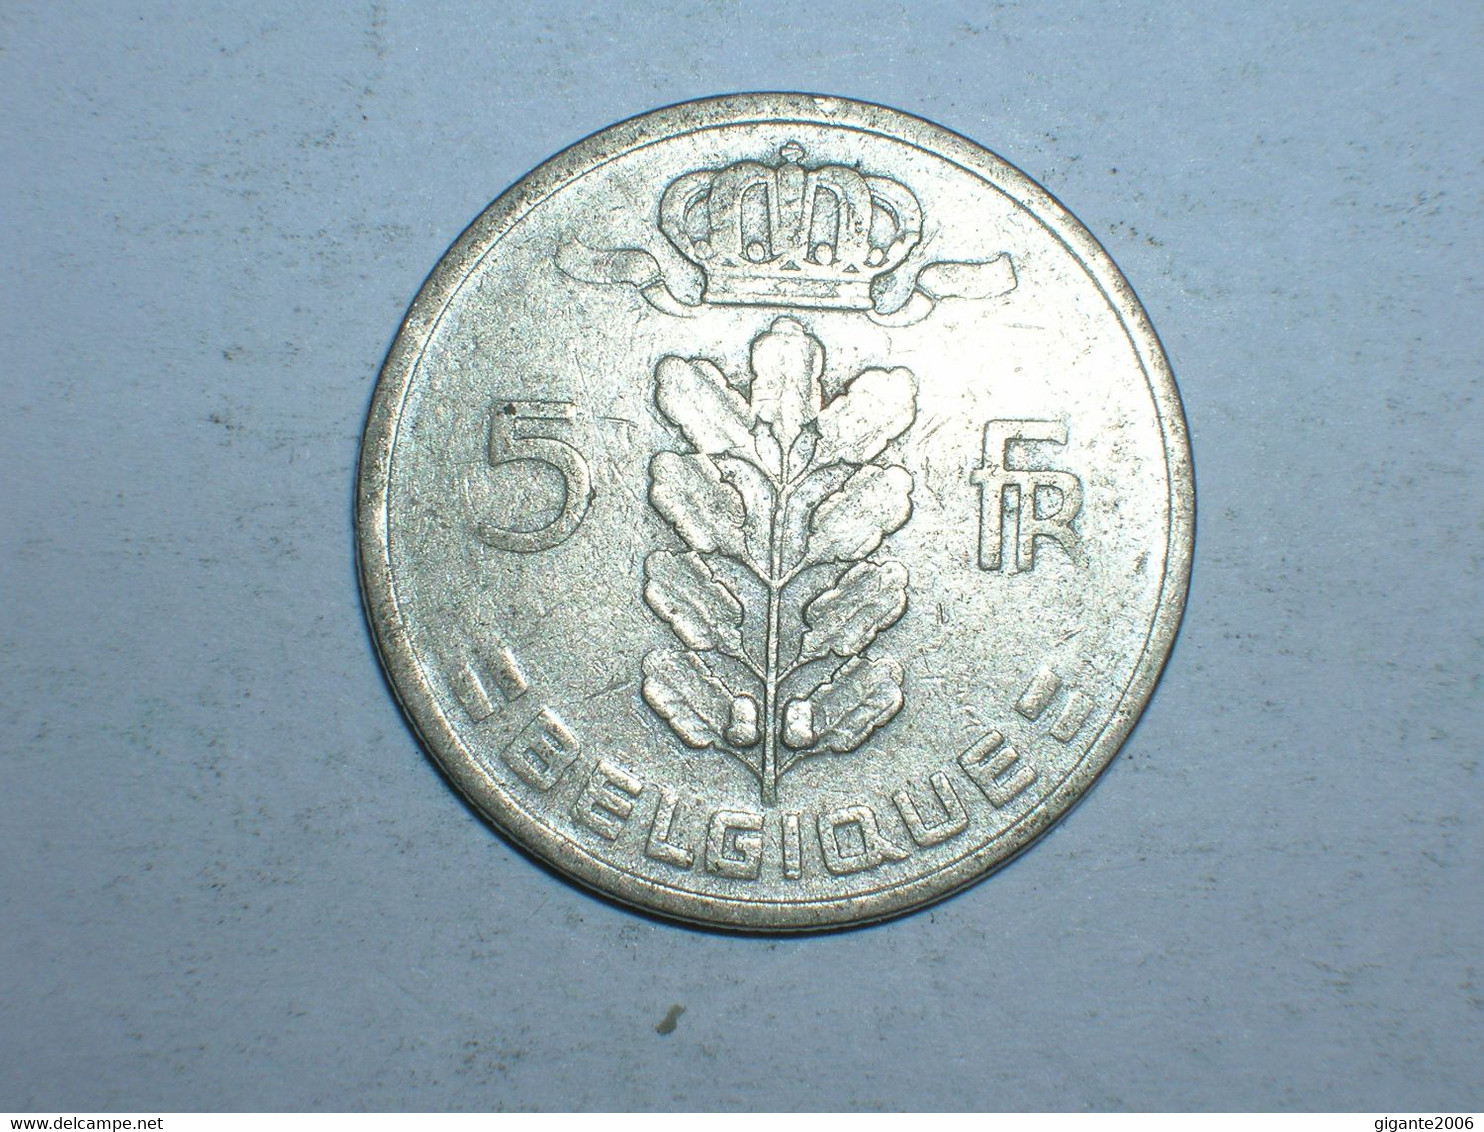 BELGICA 5 FRANCOS 1948 FR (9702) - Non Classificati